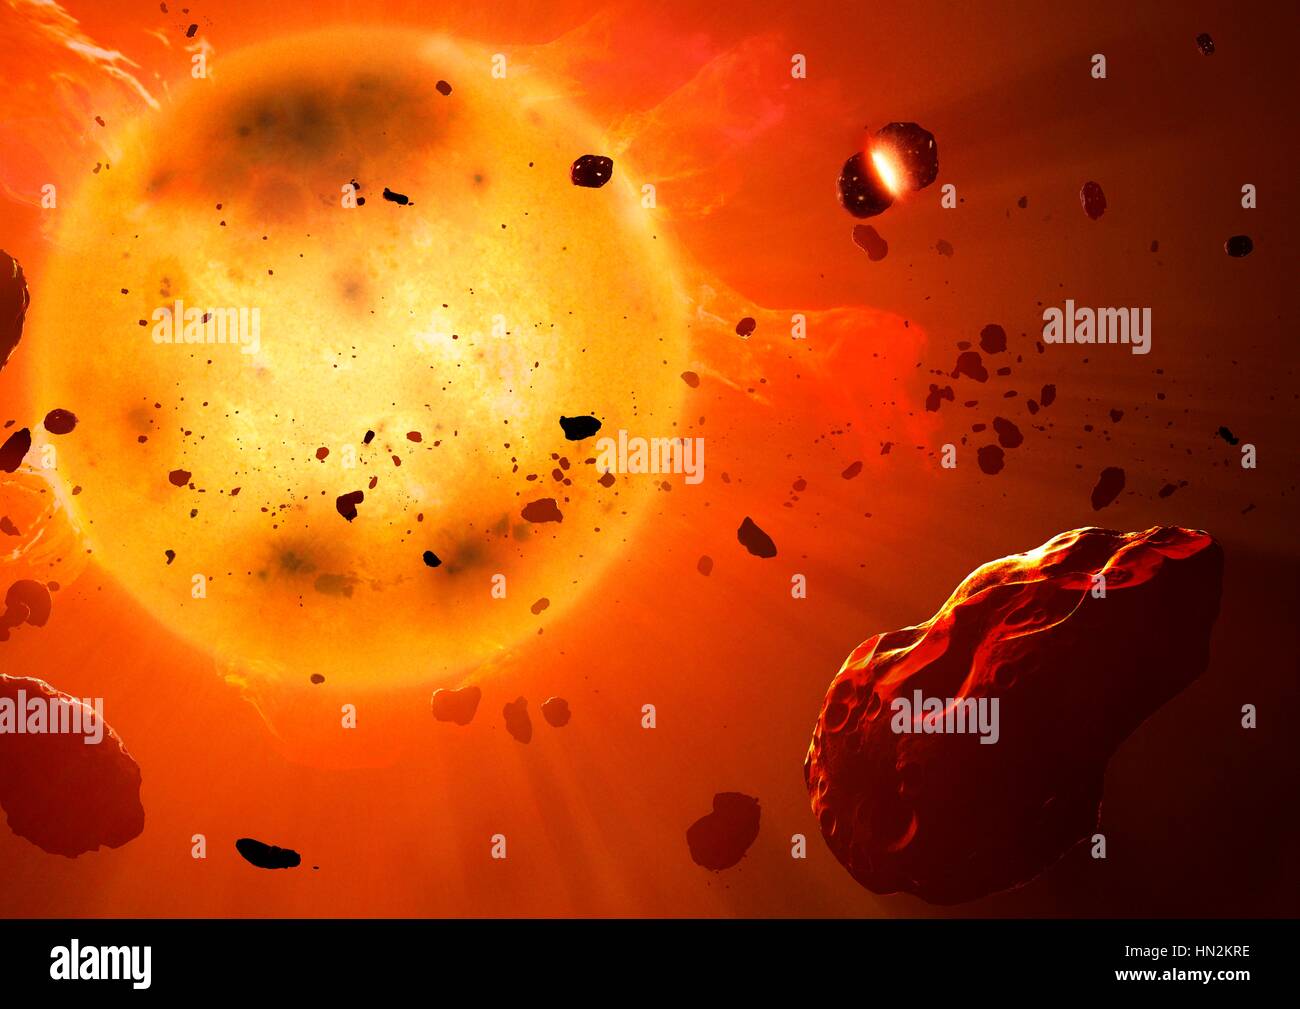 Artwork der zentralen Regionen der protoplanetaren Scheibe. Planeten bilden sich in riesigen Scheiben aus Gas Staub protoplanetaren Scheiben oder Proplyds kurz genannt. Sie sind die natürliche Folge der Sternentstehung Prozess, bei dem Stern bildet am Zentrum Planeten allmählich aus übrig gebliebenen Materialien in Scheibe ansammelt. In Stockfoto